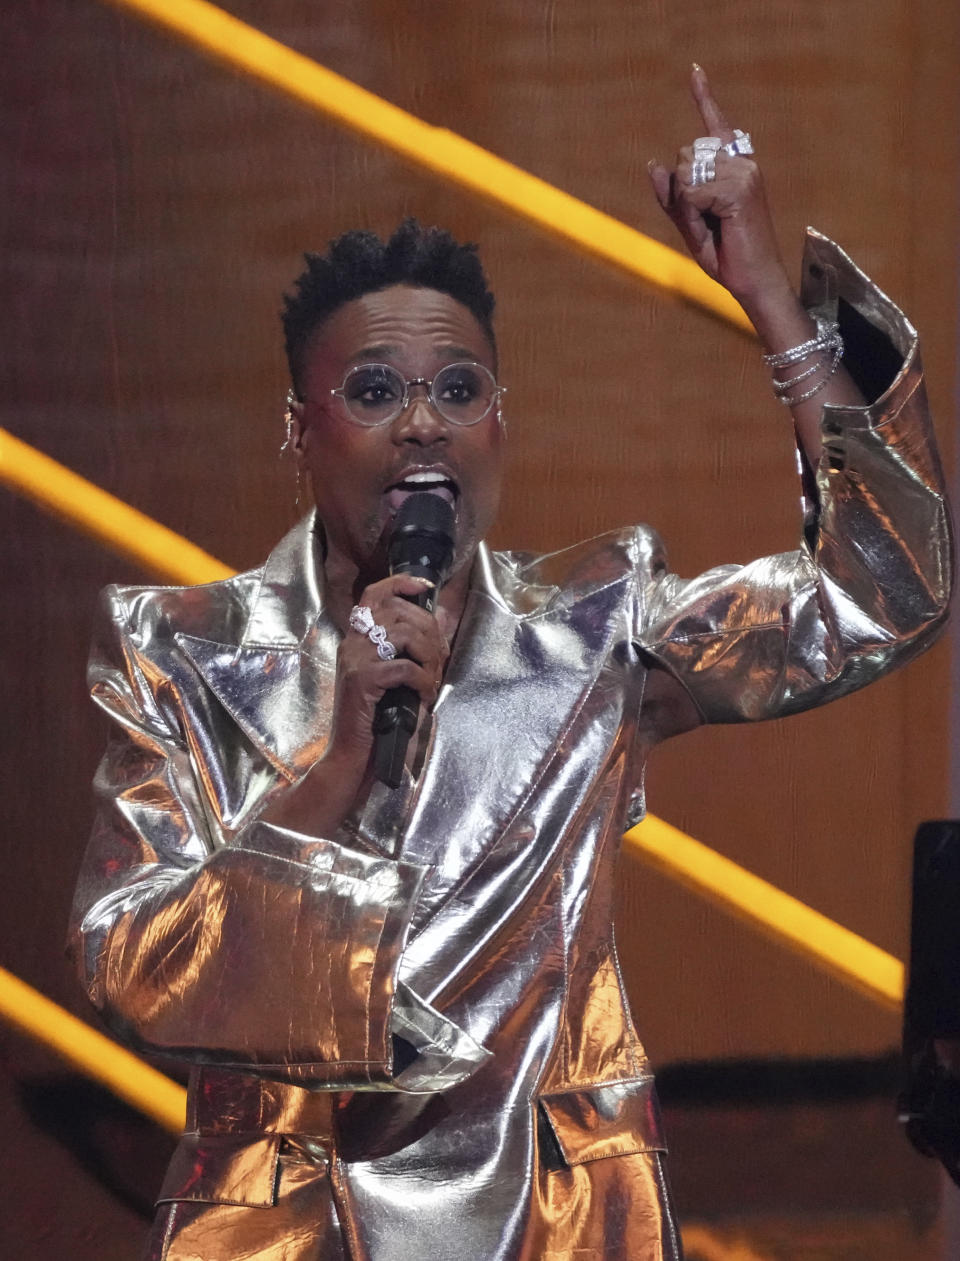 Billy Porter presenta una actuación durante la ceremonia de los Premios MTV a los Videos Musicales, el domingo 12 de septiembre de 2021 en el Barclays Center en Nueva York. (Foto por Charles Sykes/Invision/AP)